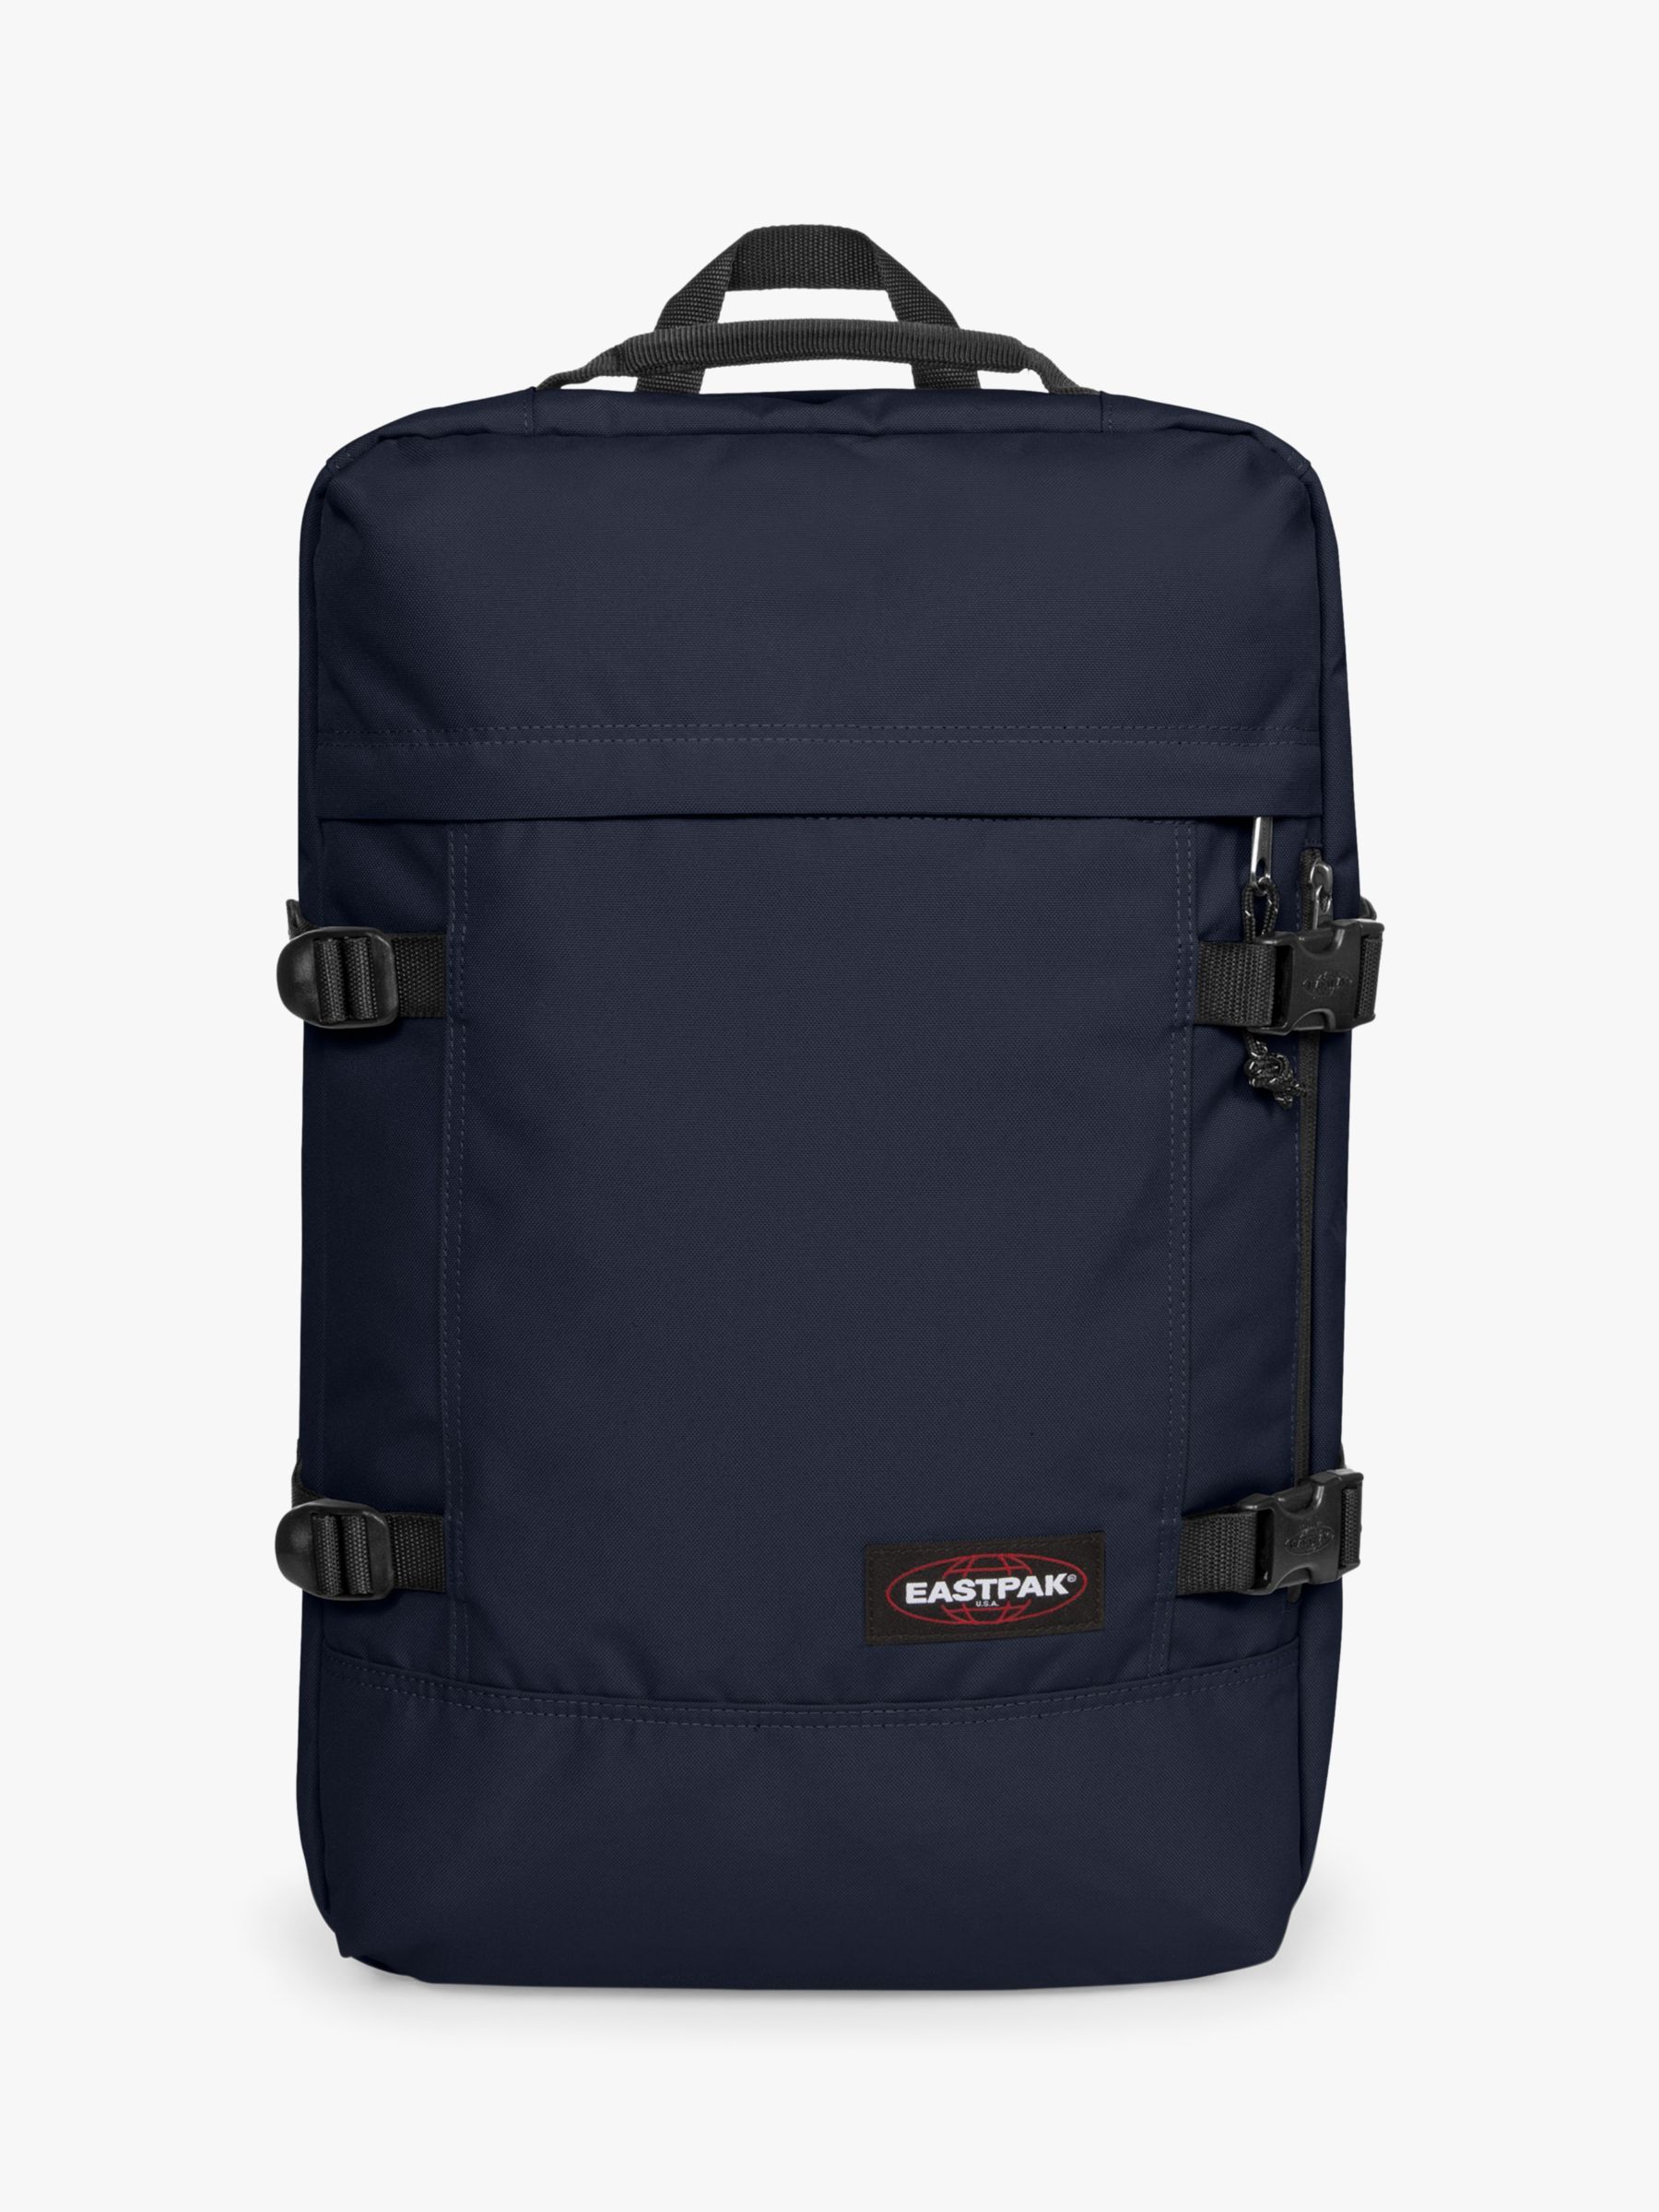 Eastpak Tranzpack Backpack, Ultra Marine at John Lewis & Partners